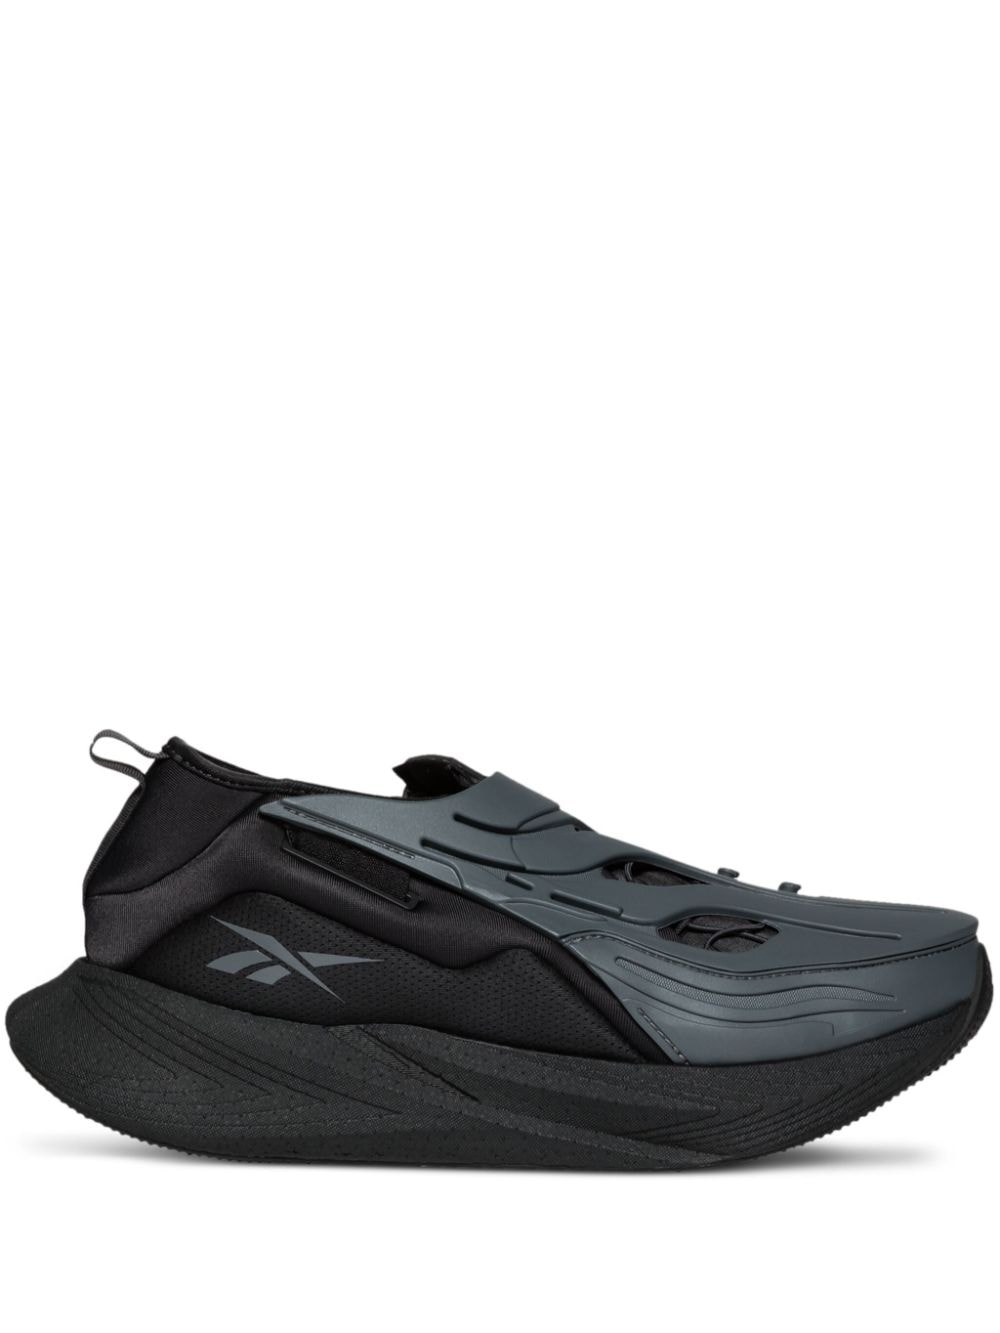 Reebok LTD Floatride Energy Shield System sneakers - Black von Reebok LTD